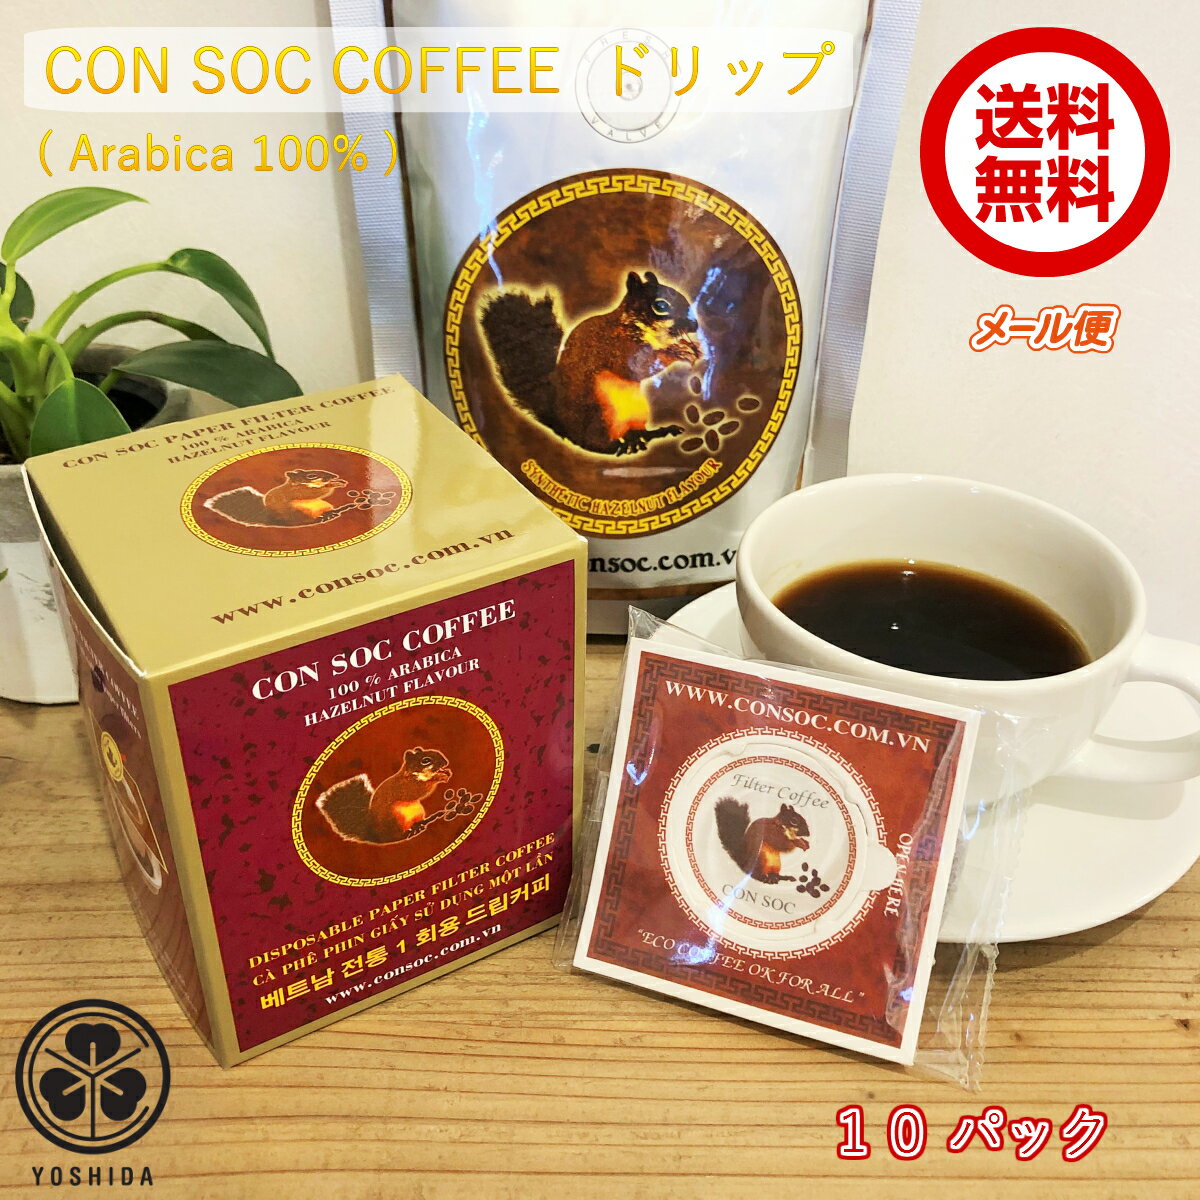 【送料無料】ベトナムコーヒー CONSOC COFFEE アラビカ 中挽き ペーパーフィルタードリップ (7gx10袋) ヘーゼルナッツフレーバー Arabica 100% レギュラーコーヒー ドリップバッグタイプ (メール便)